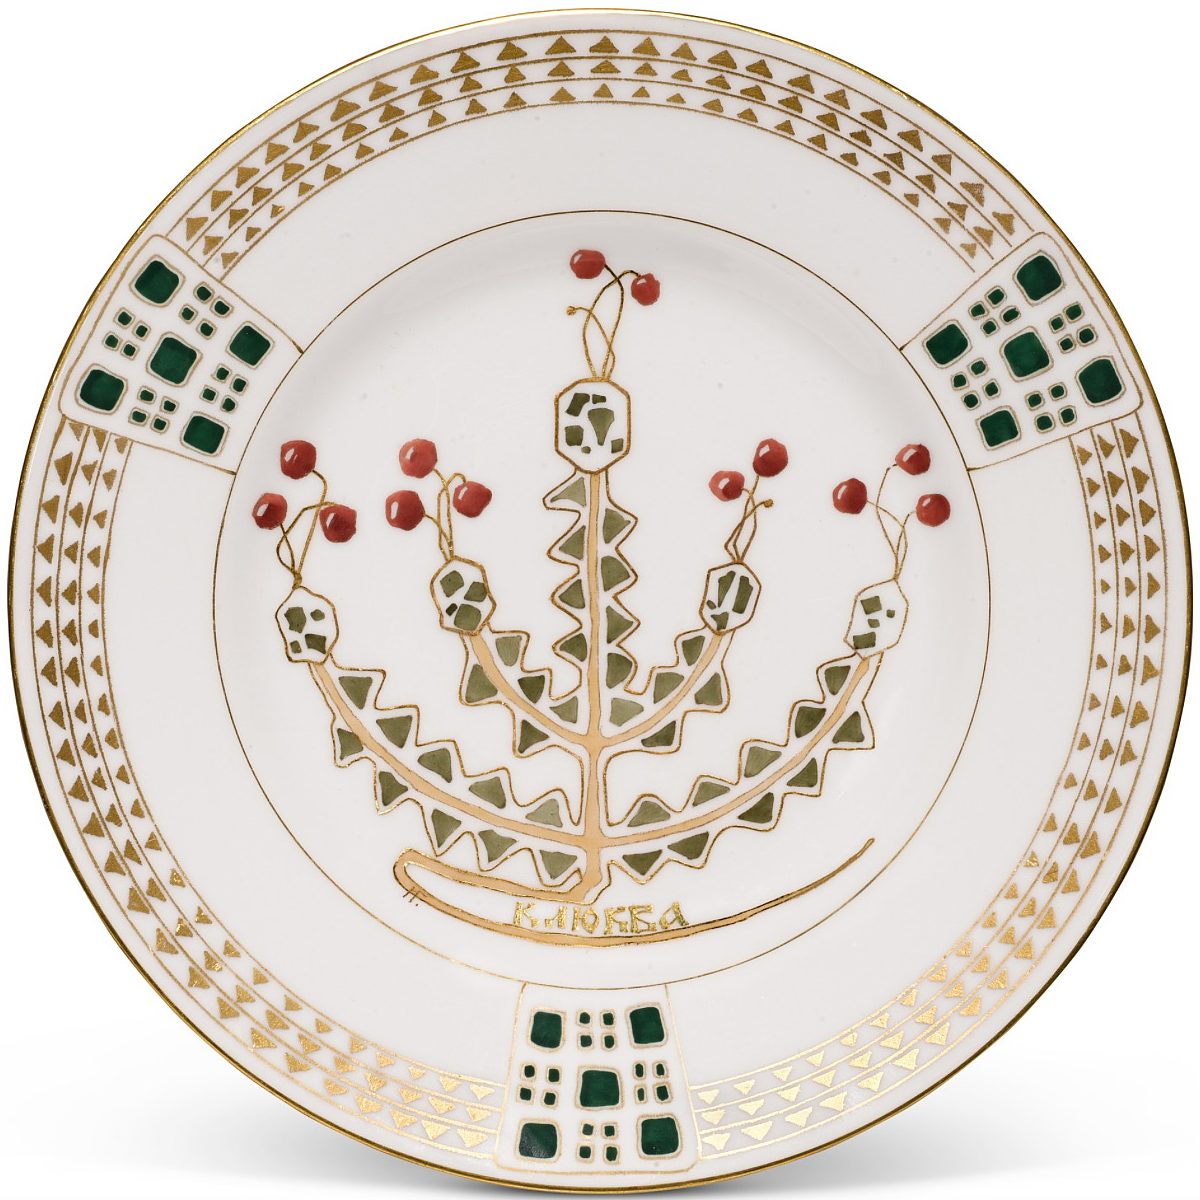 Kornilov Brothers porcelain plate "Hickleberry" by Ivan Galnbek